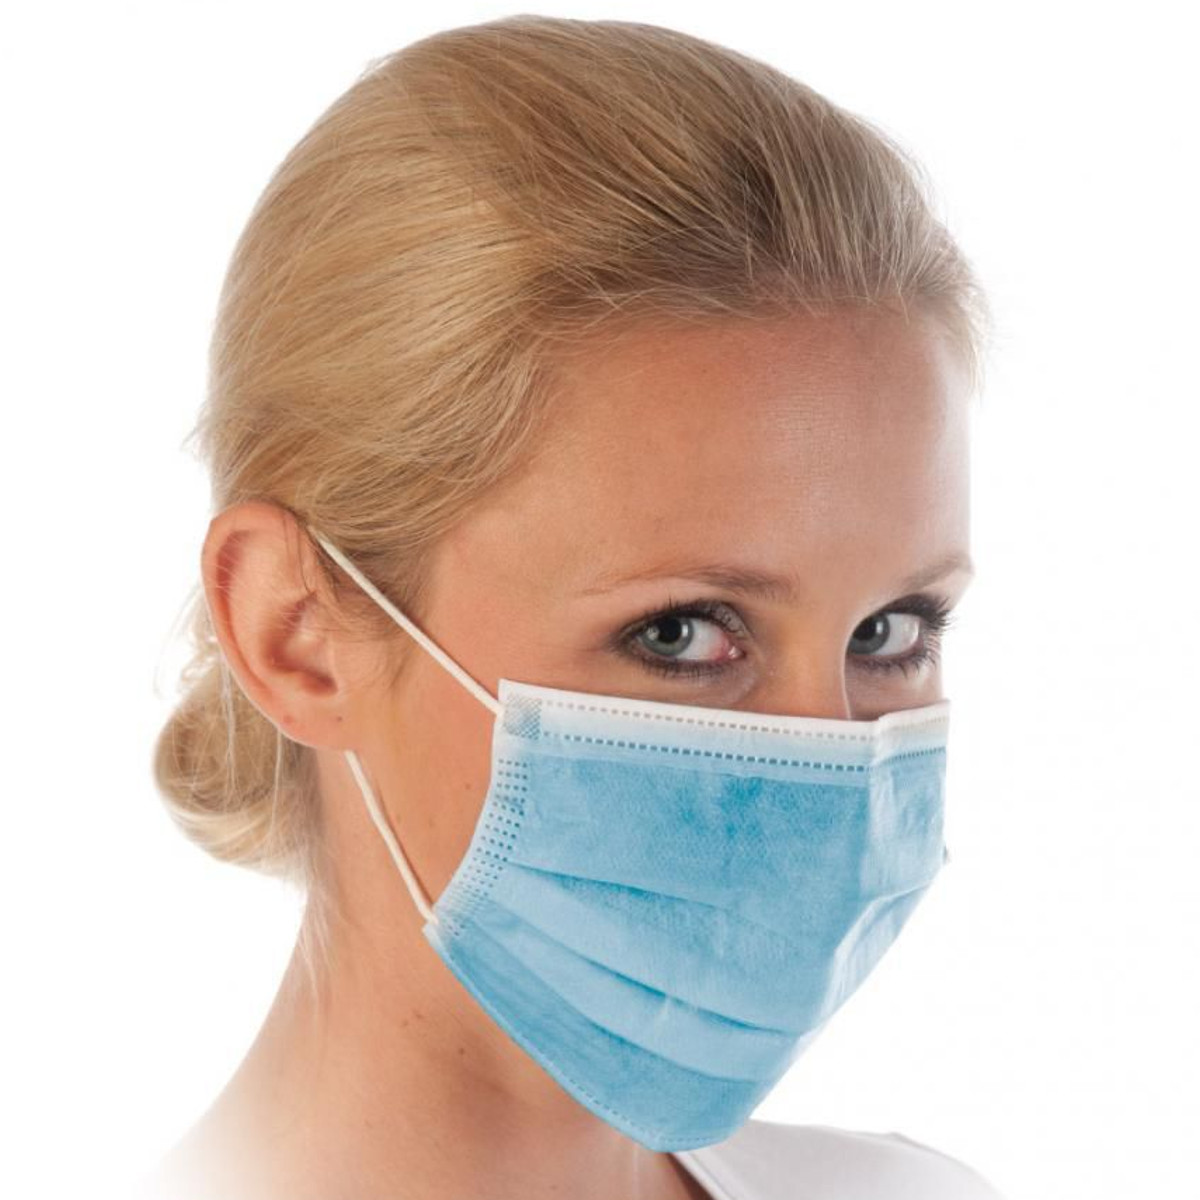 Защитная маска для лица купить. Маска медицинская. Маска защитная медицинская. Защитная медицинская маска для лица. Хирургическая маска.